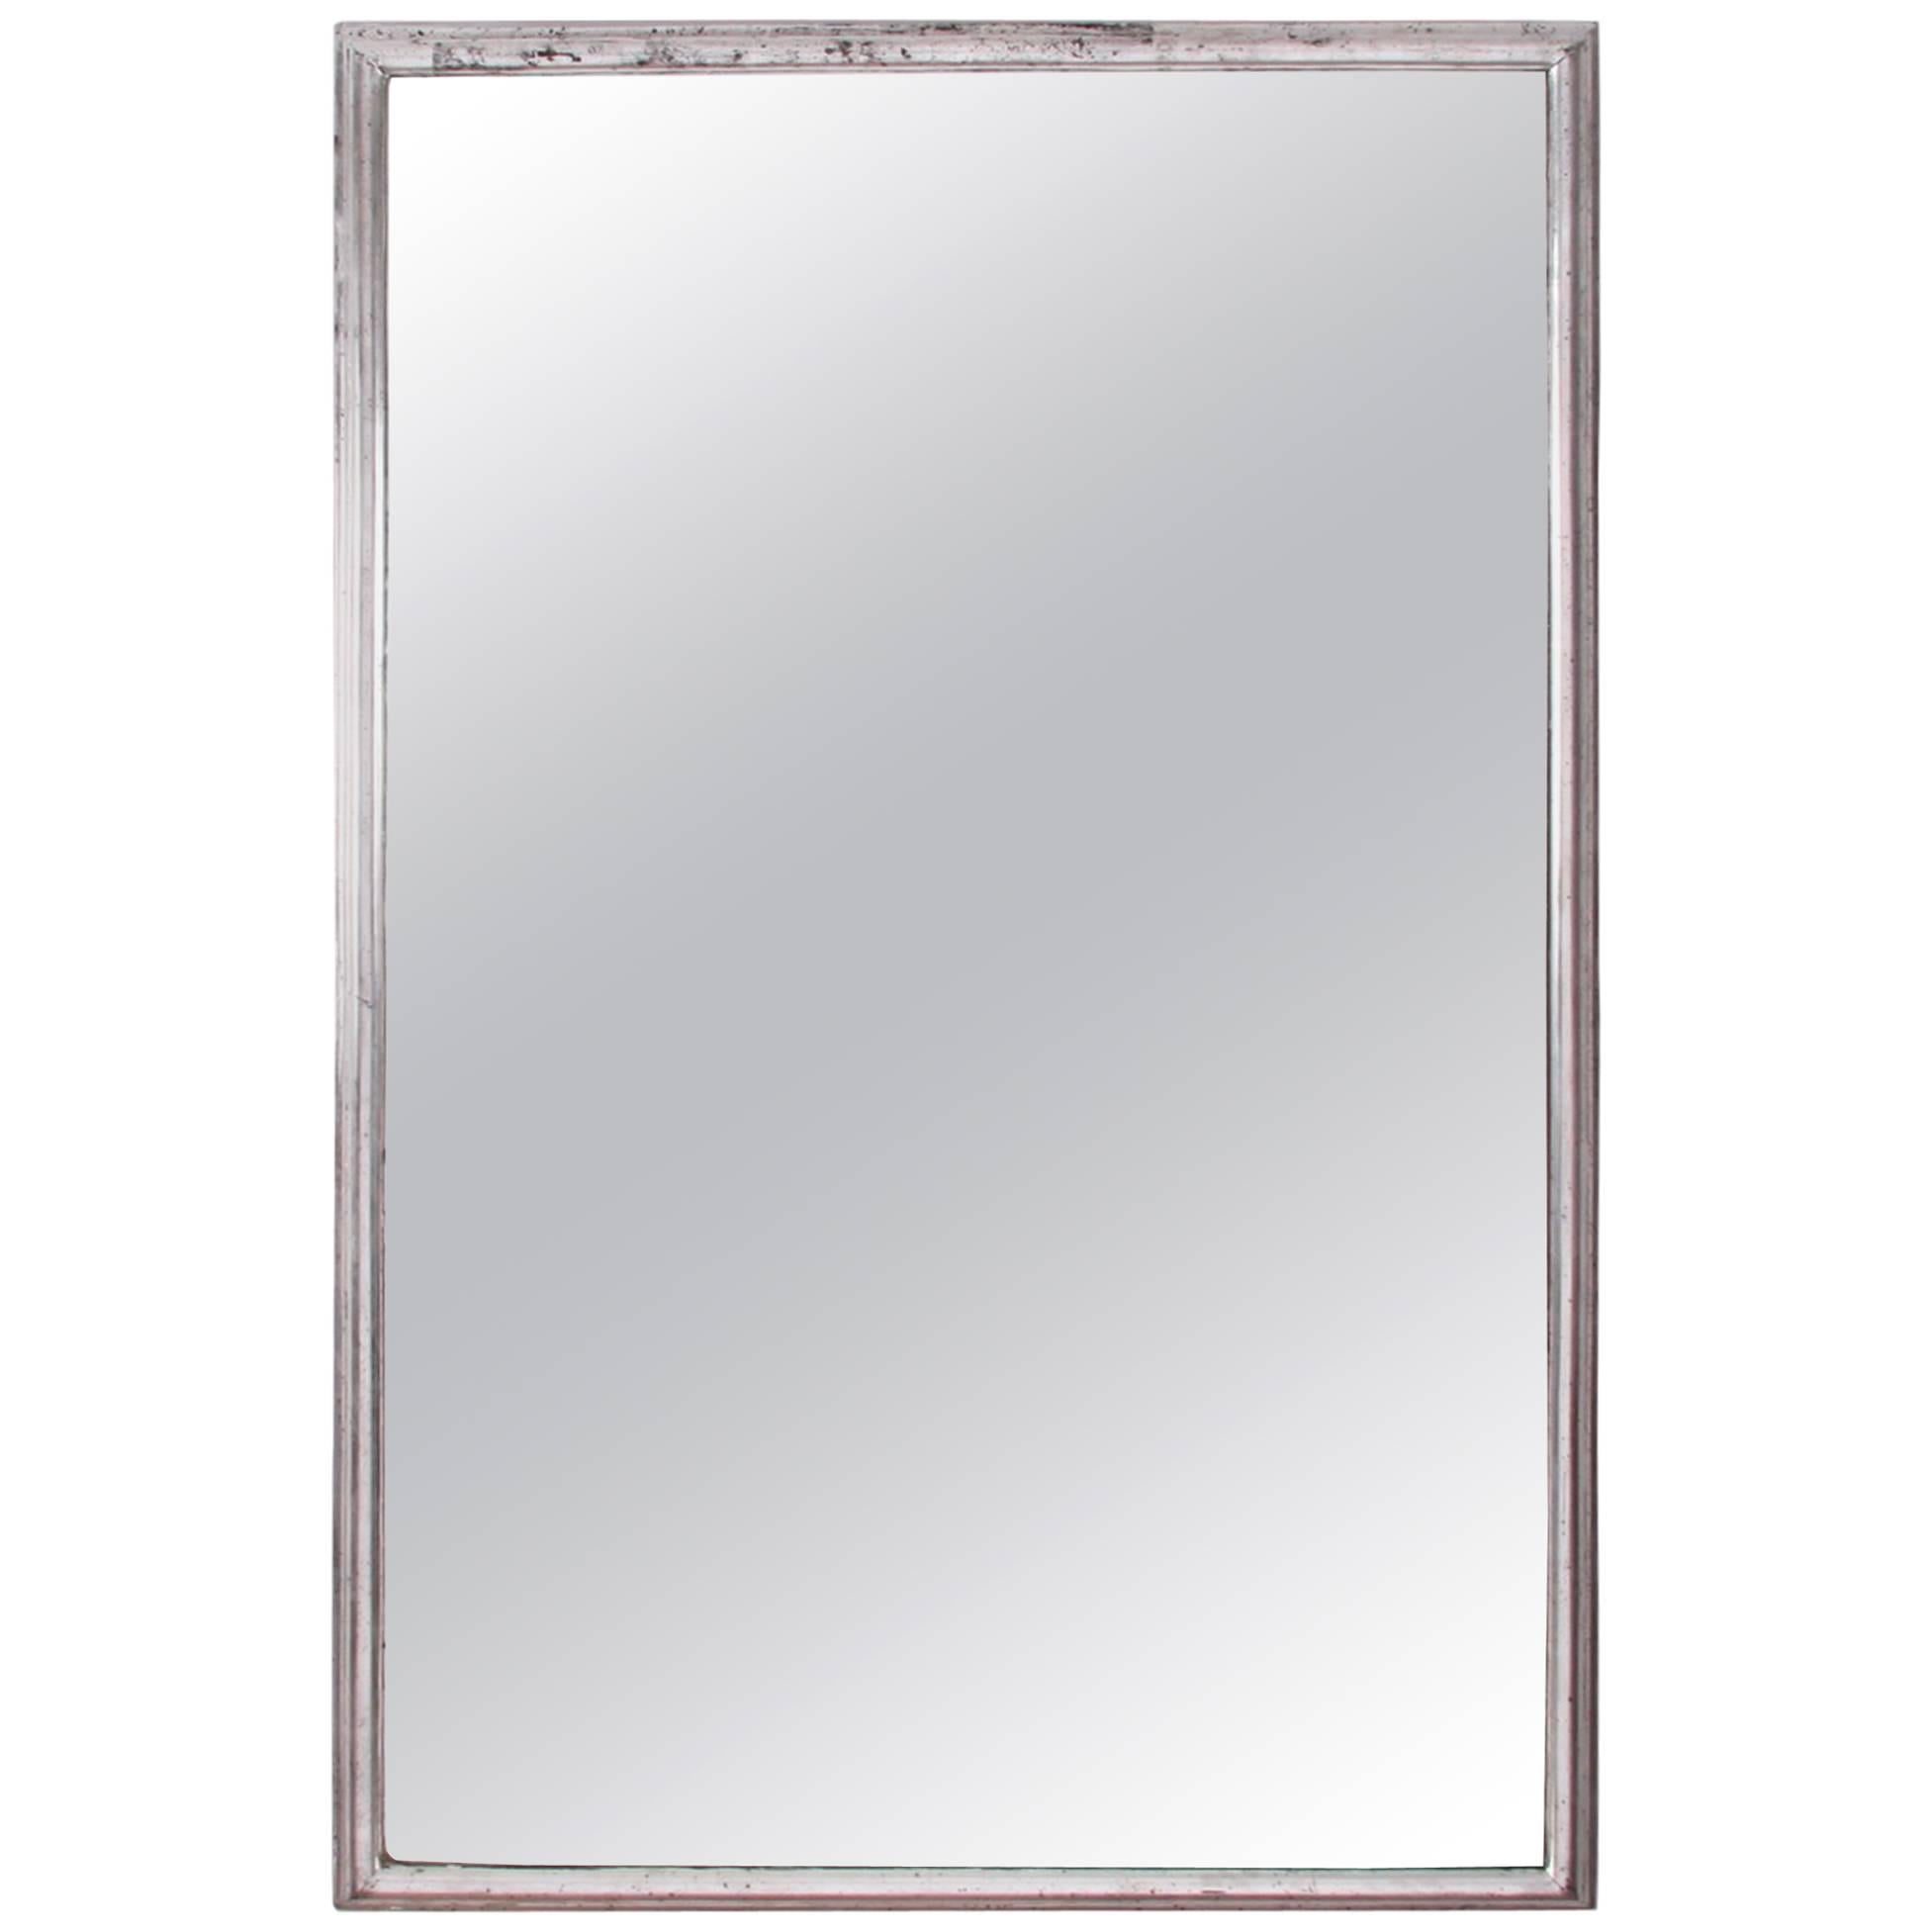 Early 20th Century Silver Leaf Mirror